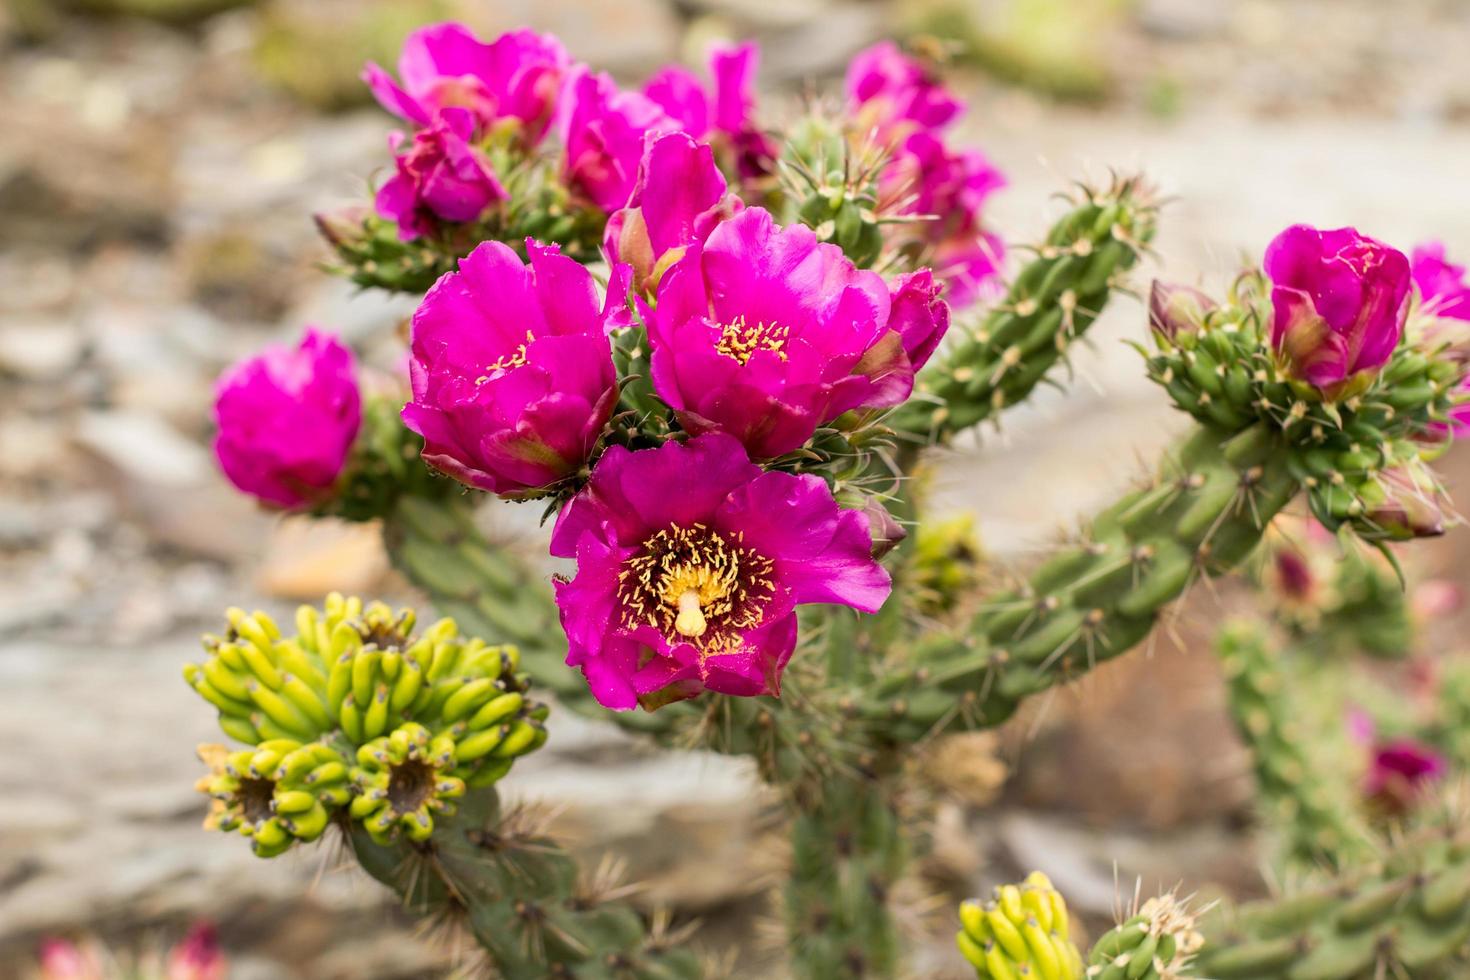 vetplanten in een natuurlijke habitat, cactus in de woestijn buiten foto